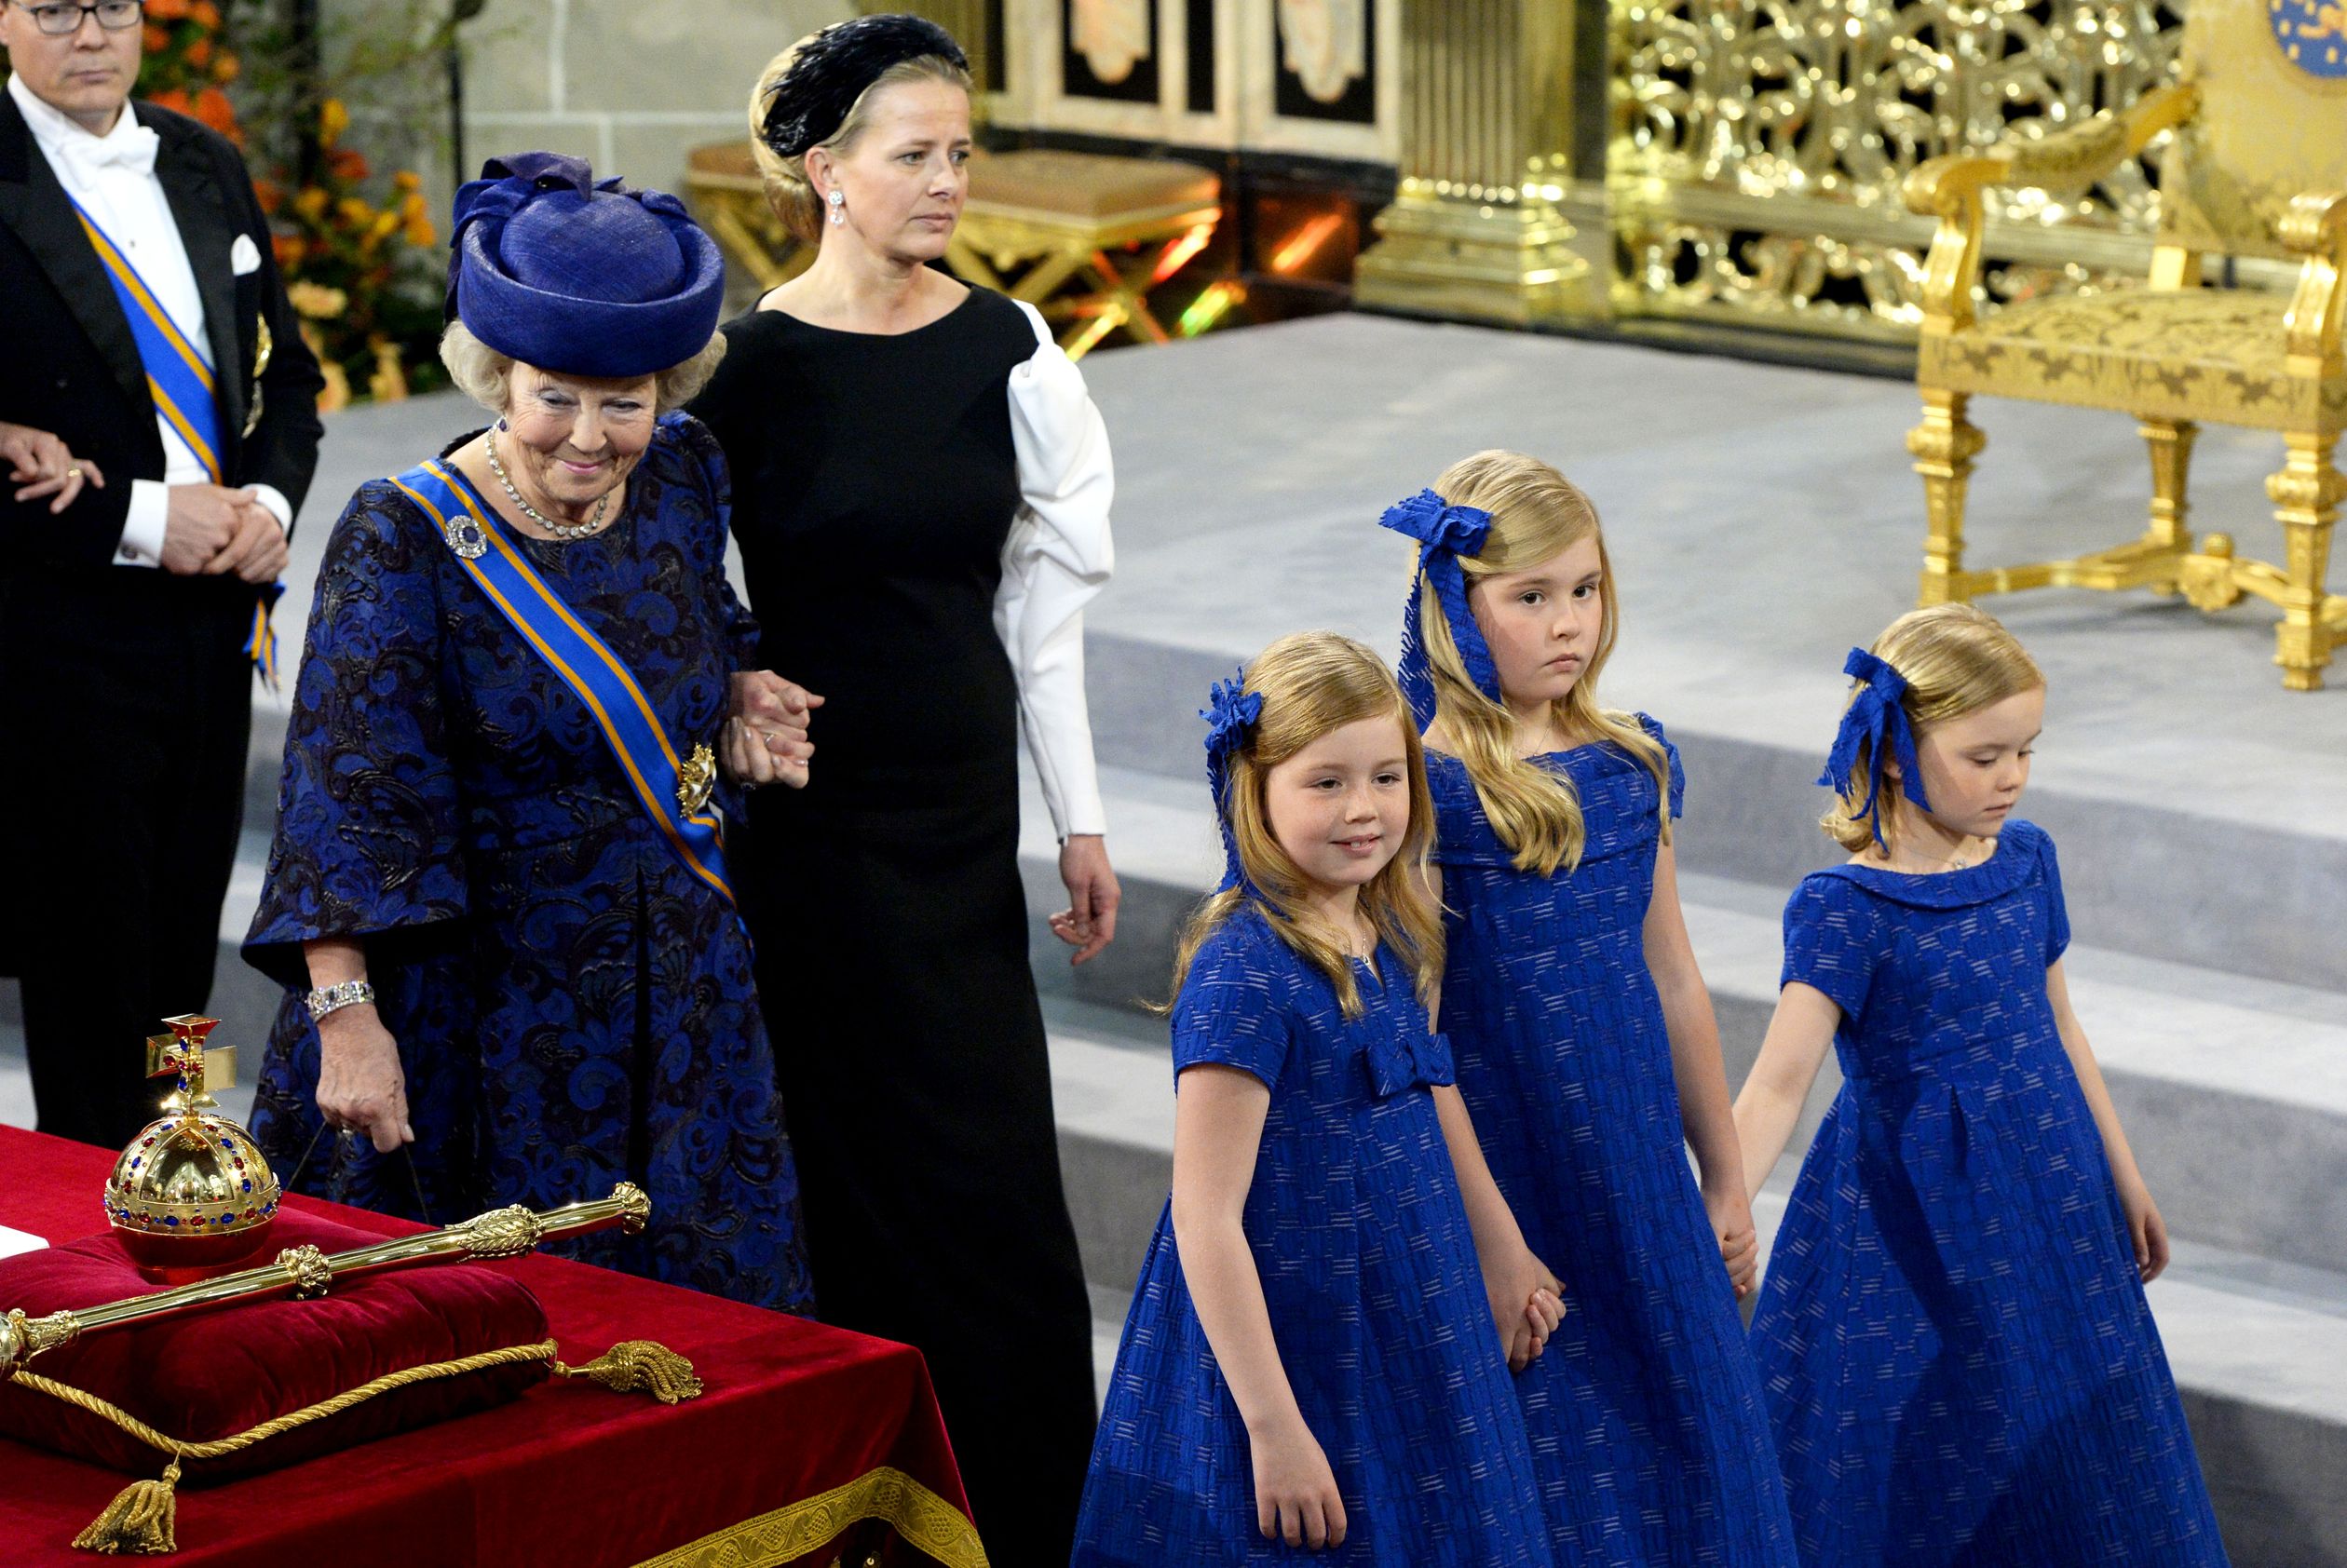 2013 - Prinses Mabel draagt de rouwjapon bij de inhuldiging van koning Willem-Alexander.